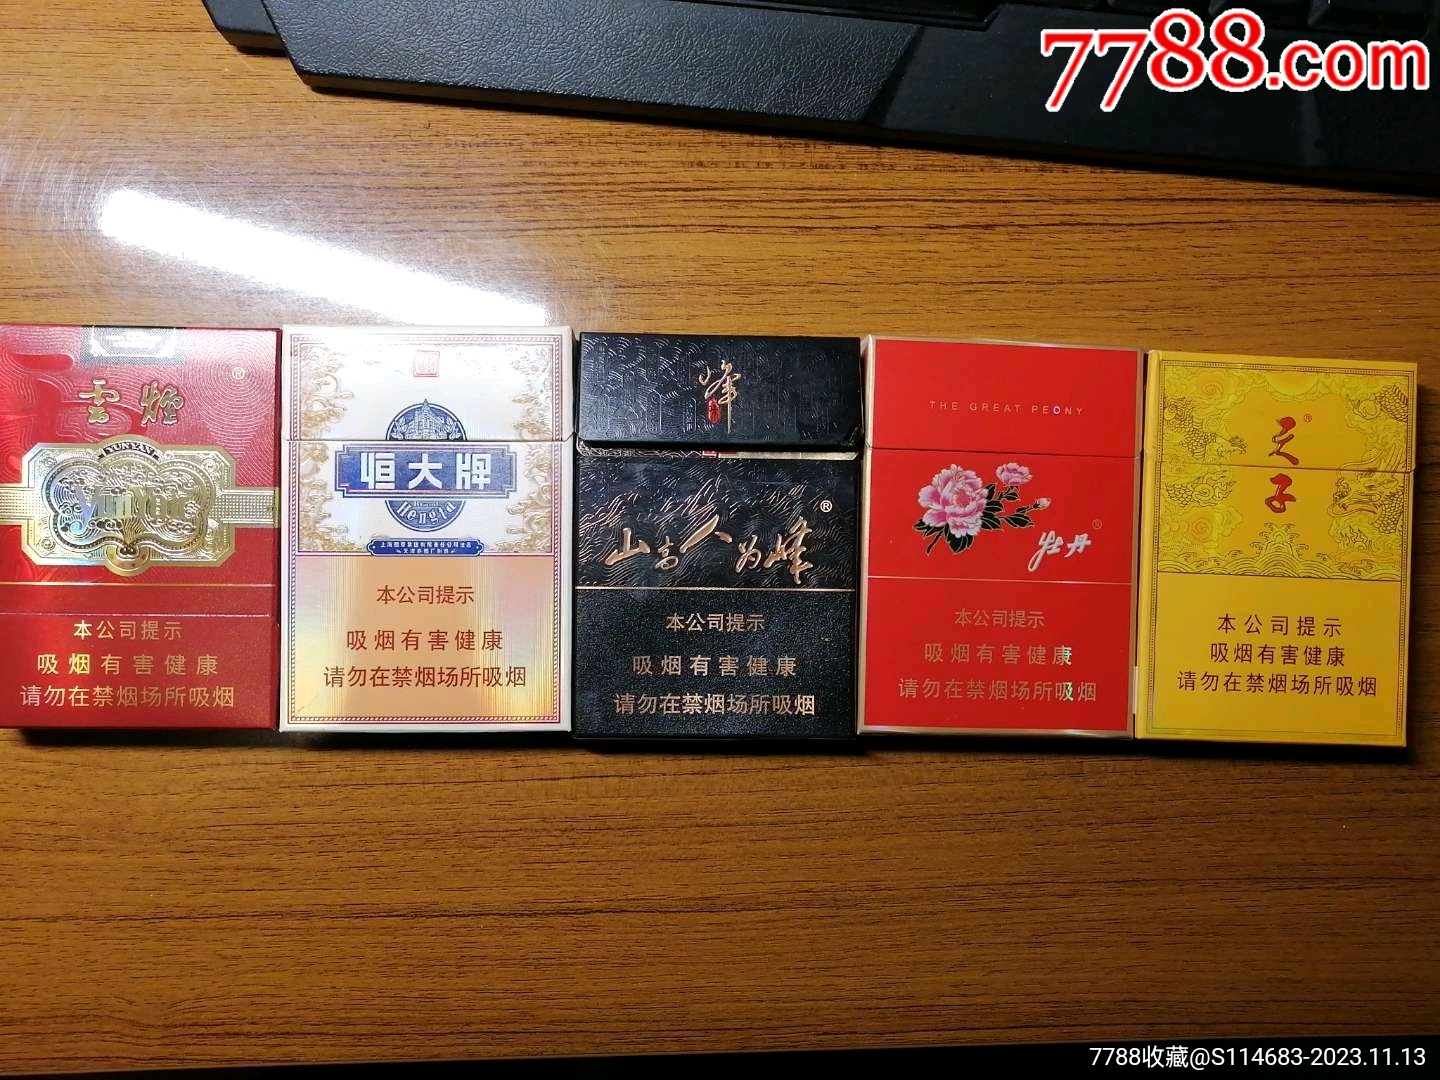 芙蓉王烟价格表 红色图片